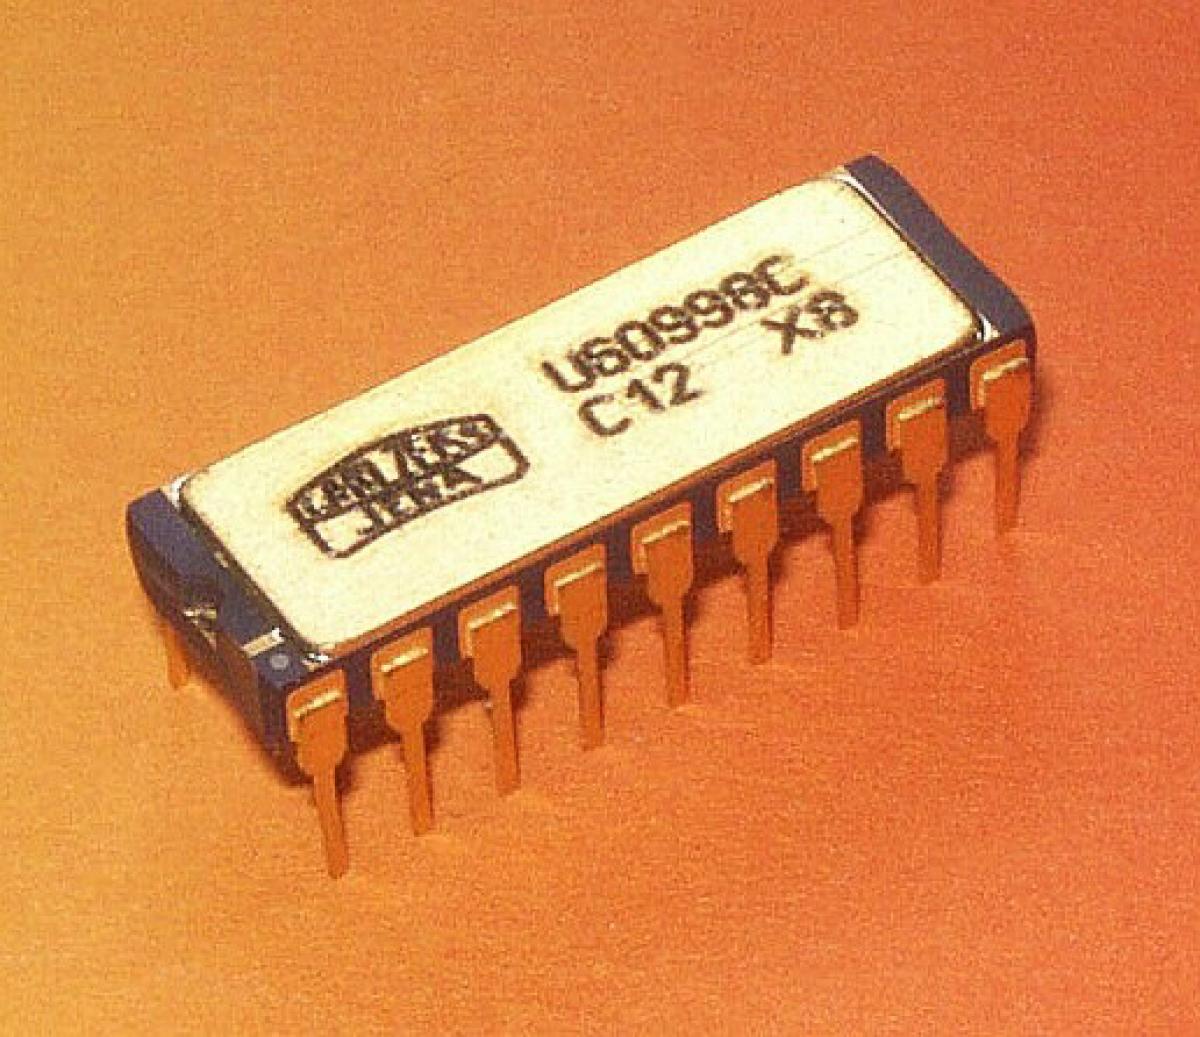 Chip DDR